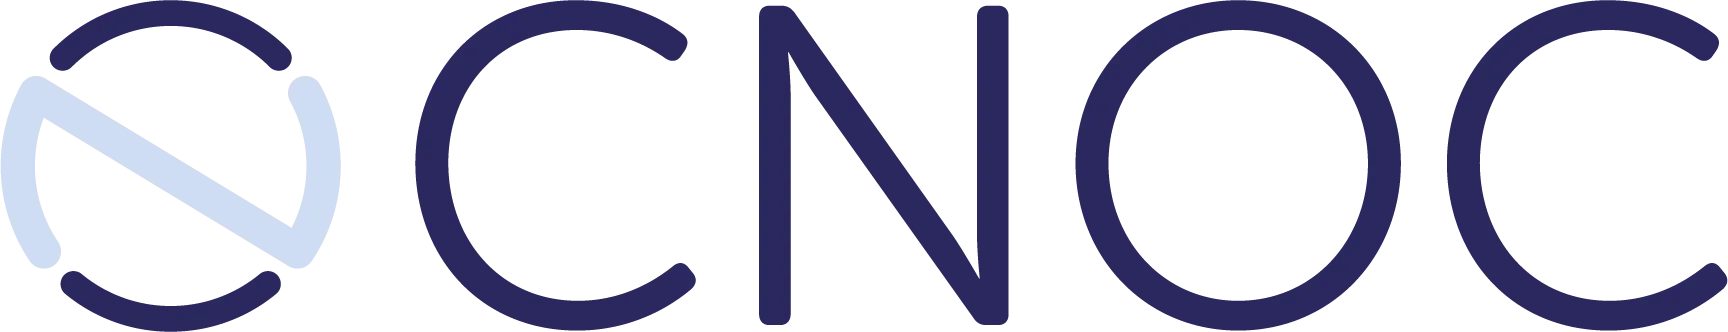 logo van de CNOC